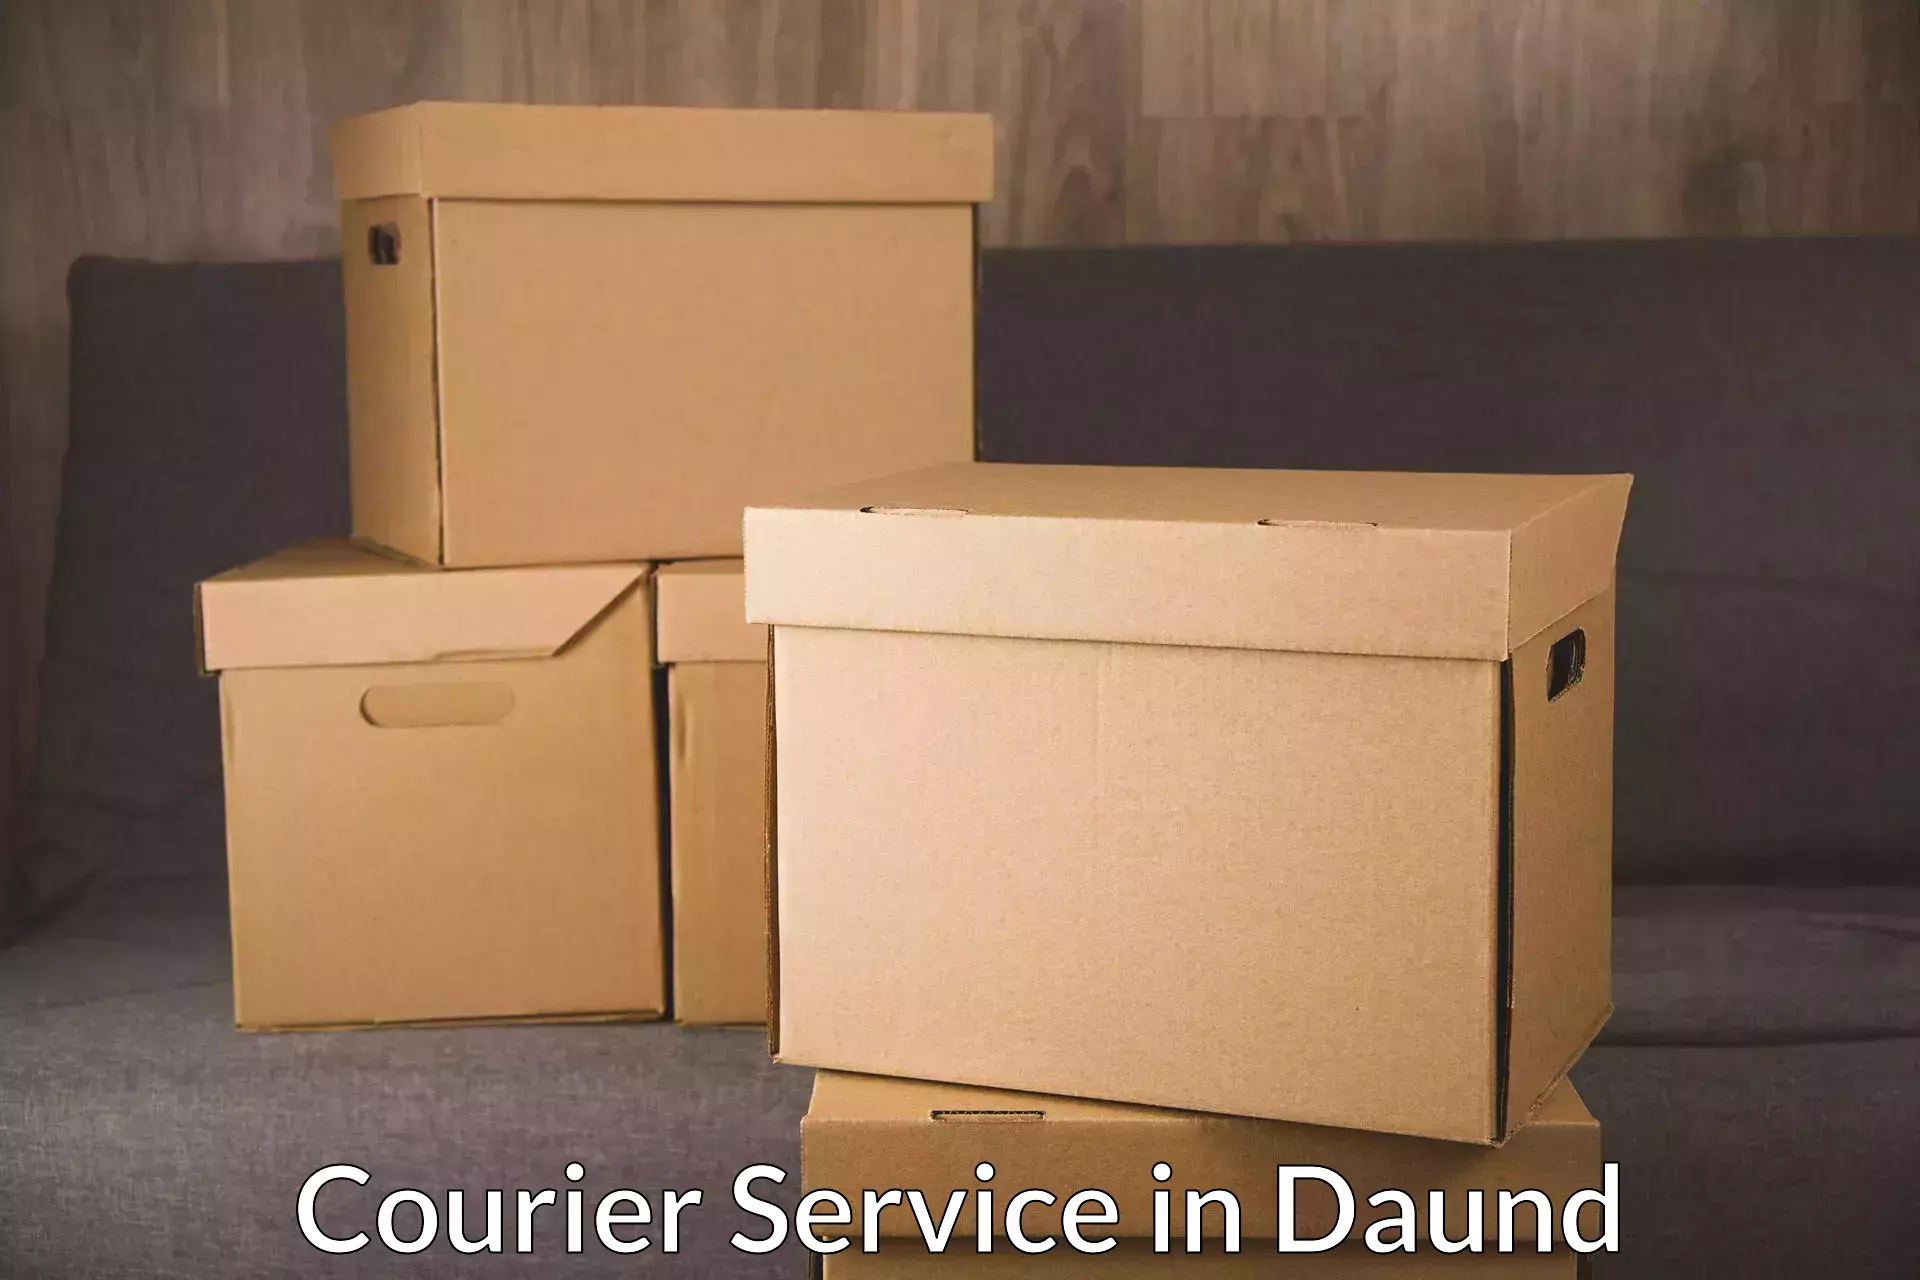 Speedy delivery service in Daund